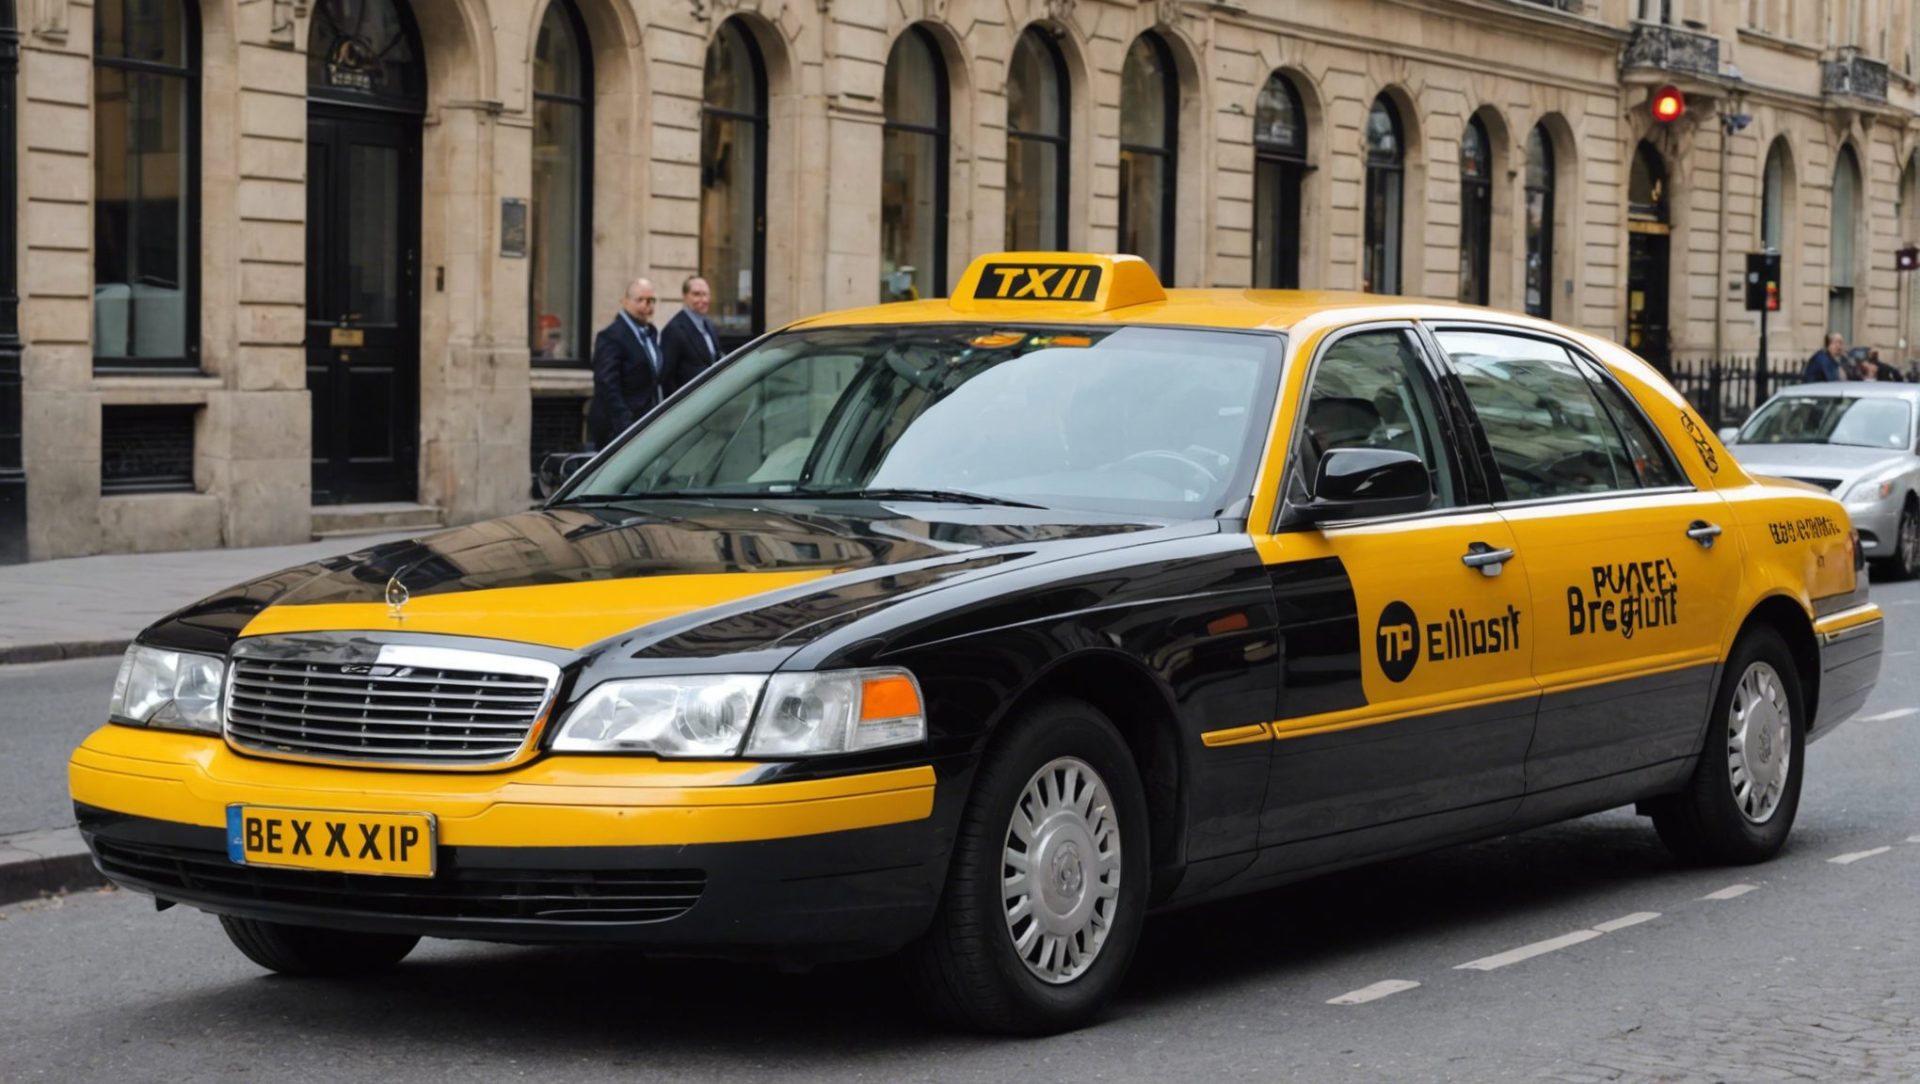 découvrez comment réserver simplement un taxi avec chauffeur privé en belgique et profitez d'un service de transport professionnel et fiable pour tous vos déplacements.